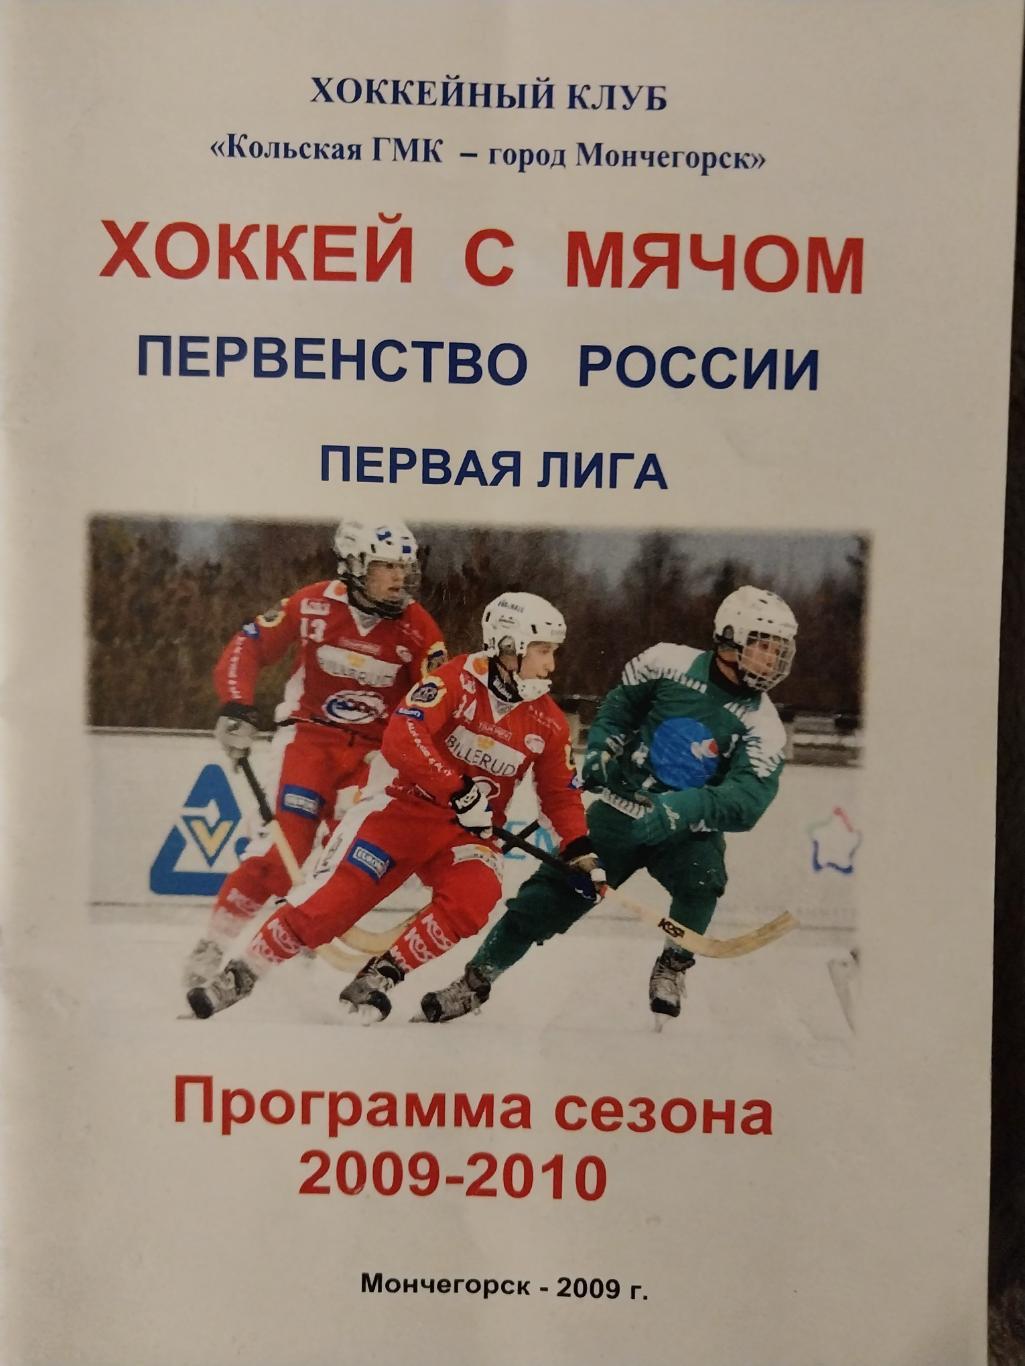 Хоккей с мячом, ХК Кольская ГМК - Мончегорск, 2009-2010